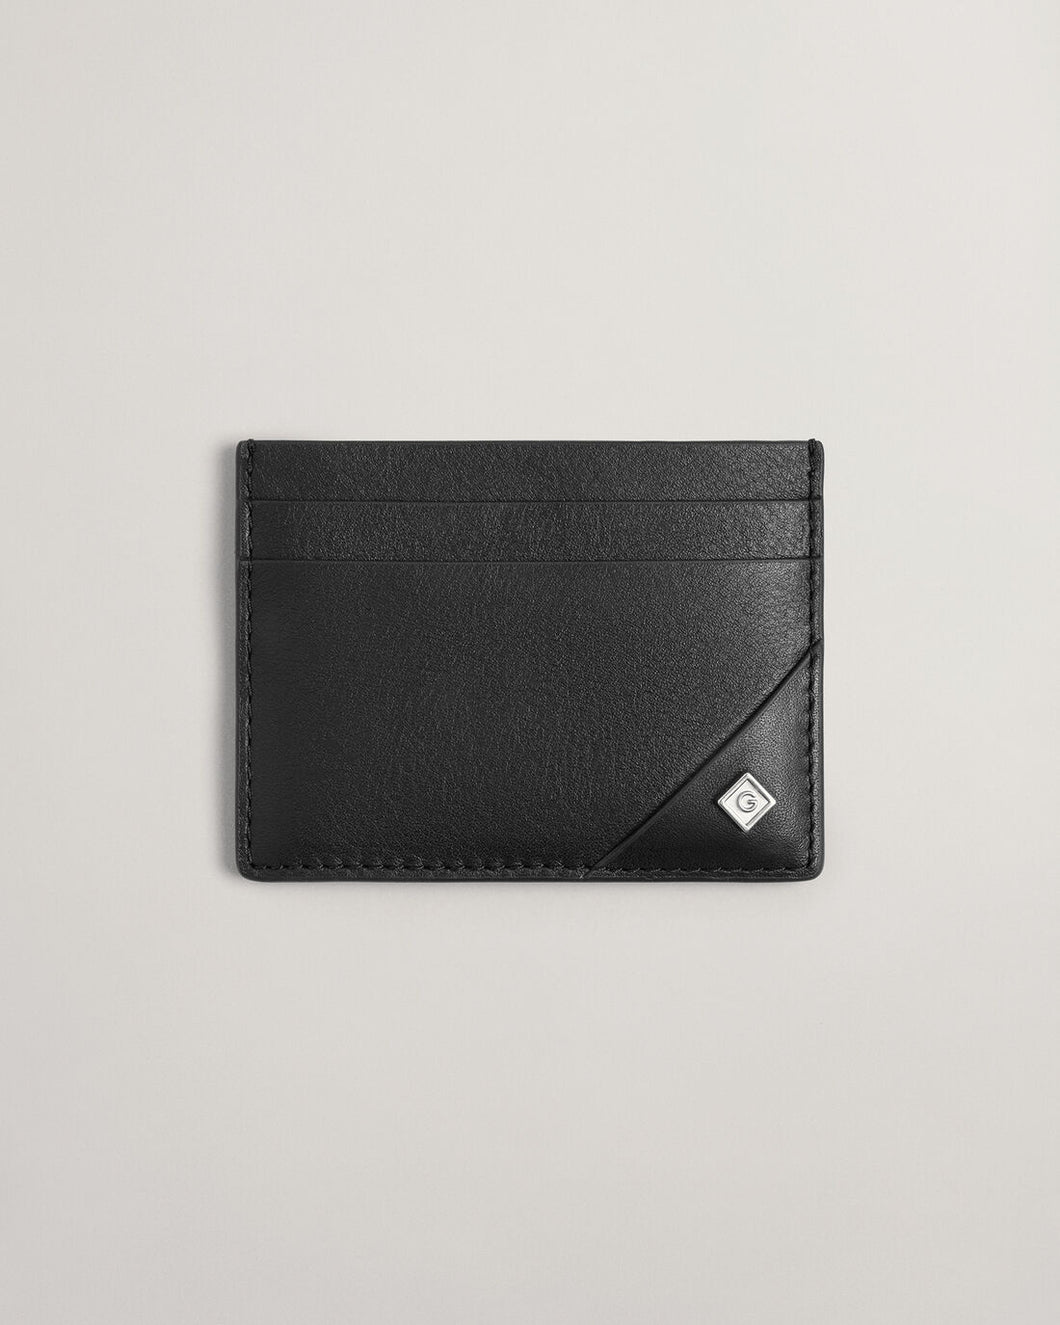 GANT - Leather Cardholder, Black